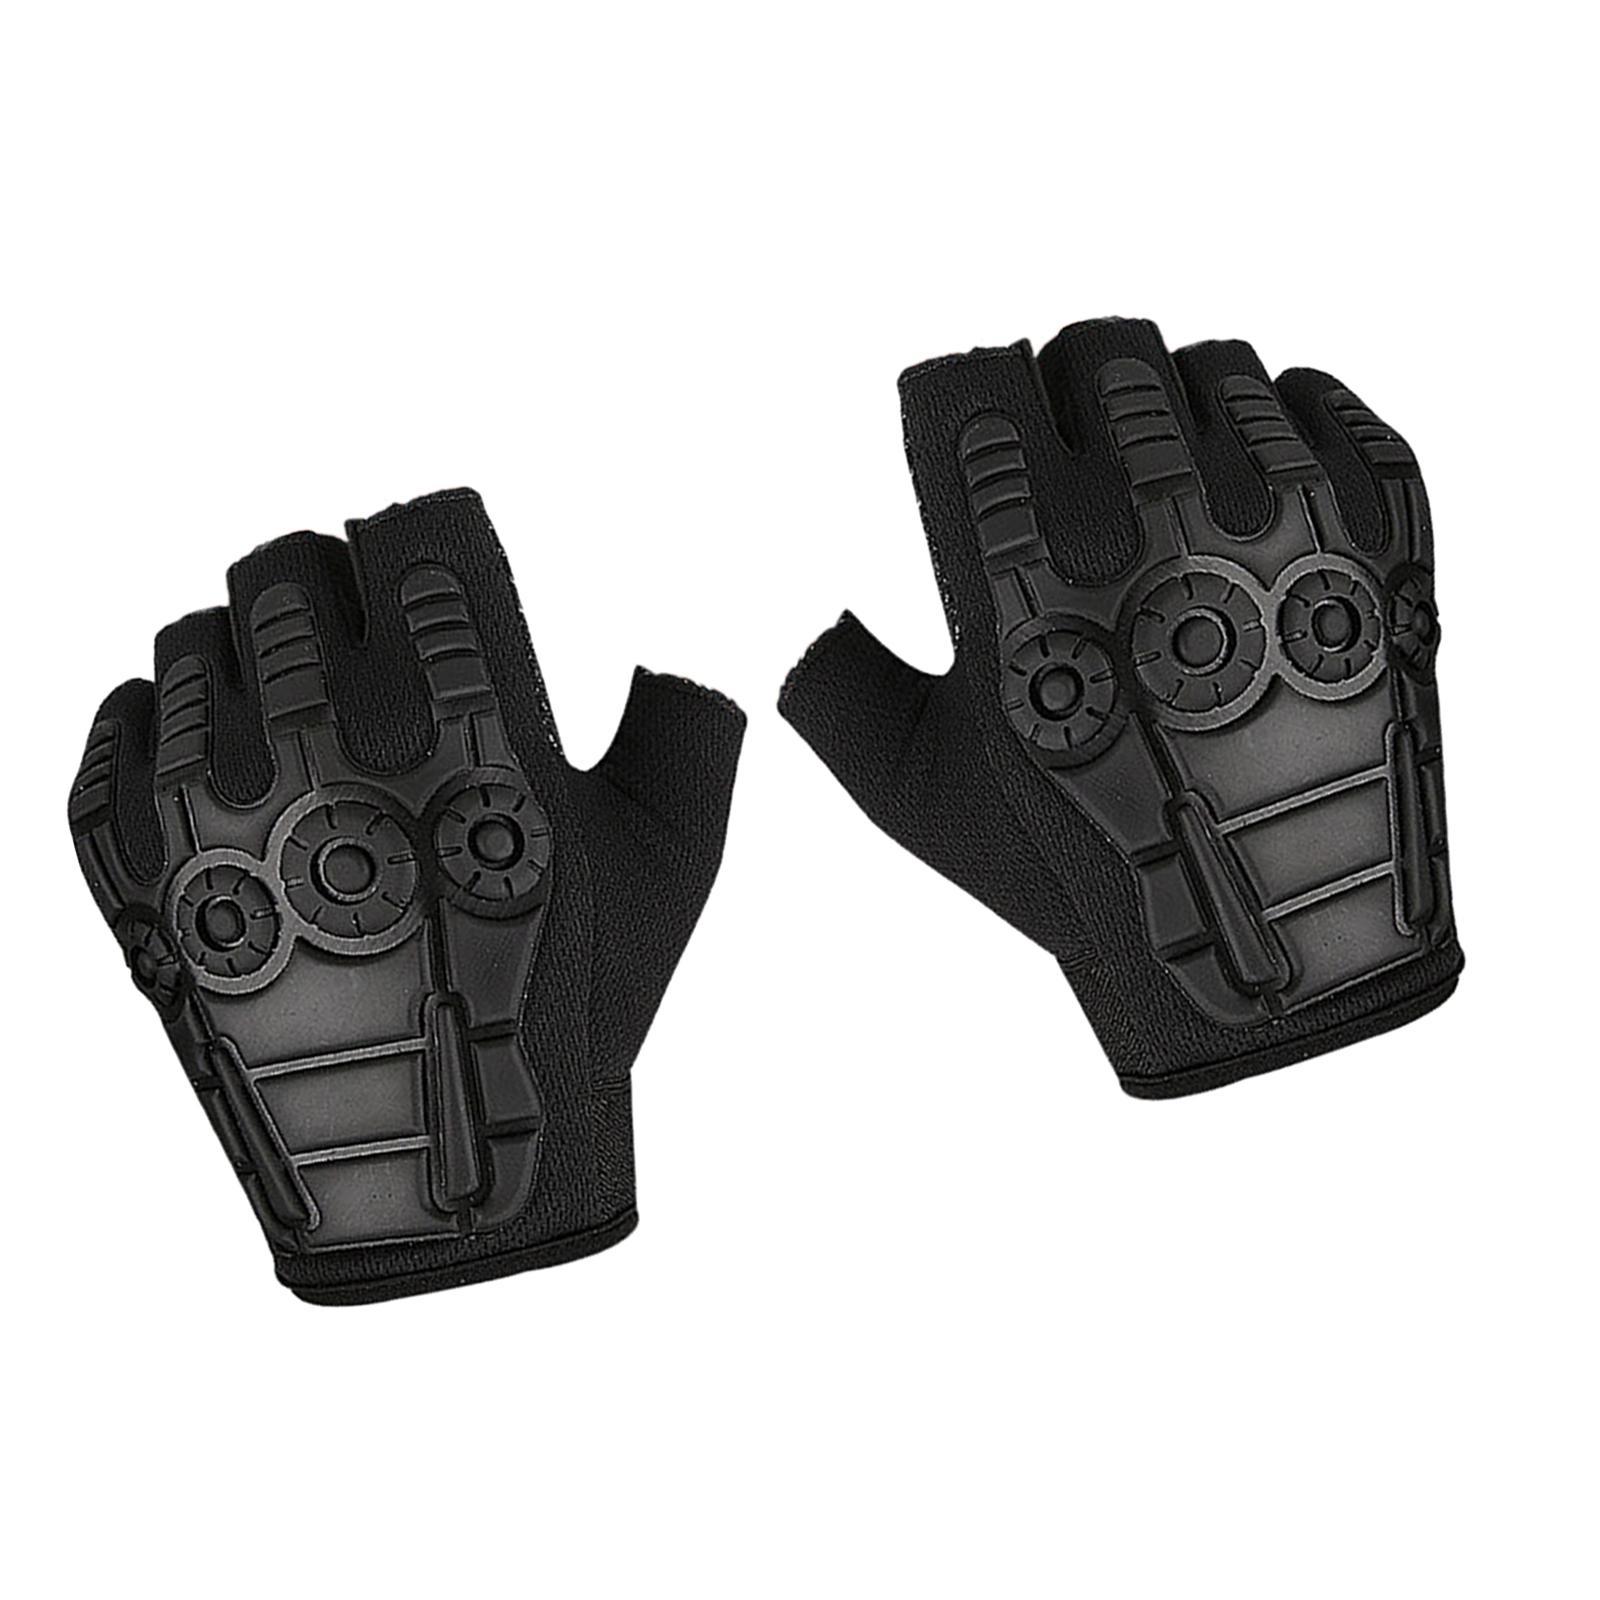 Half Finger Gloves Gym Gloves Shockproof Mittens Anti Slip Fingerless Gloves